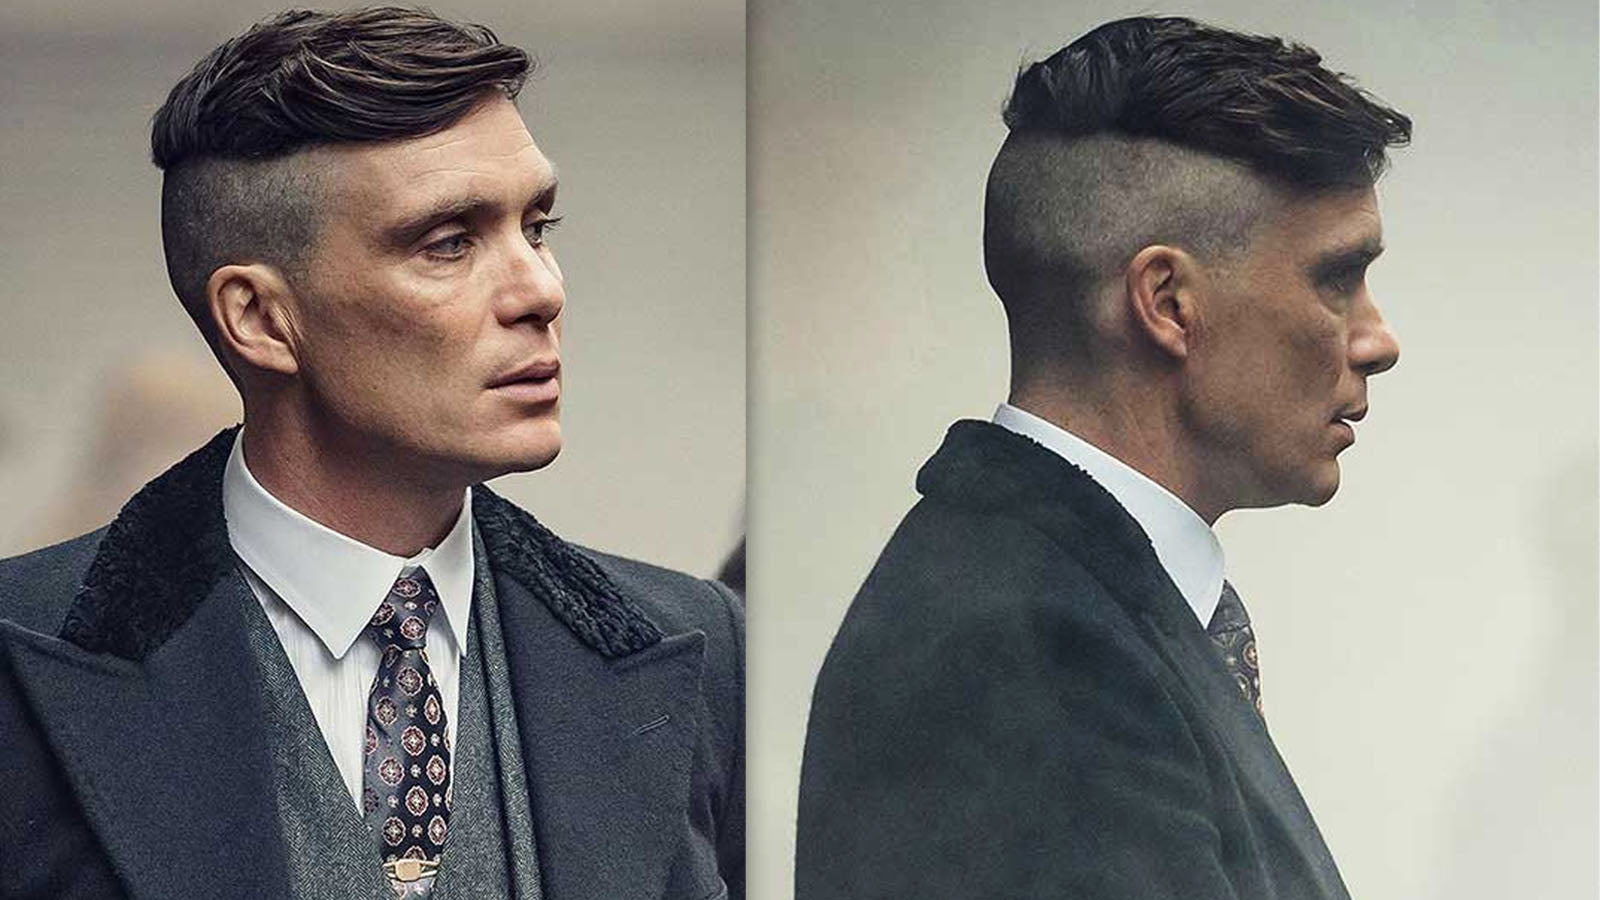 Tuto coiffure homme : comment couper ses cheveux aux ciseaux et à la  tondeuse ?